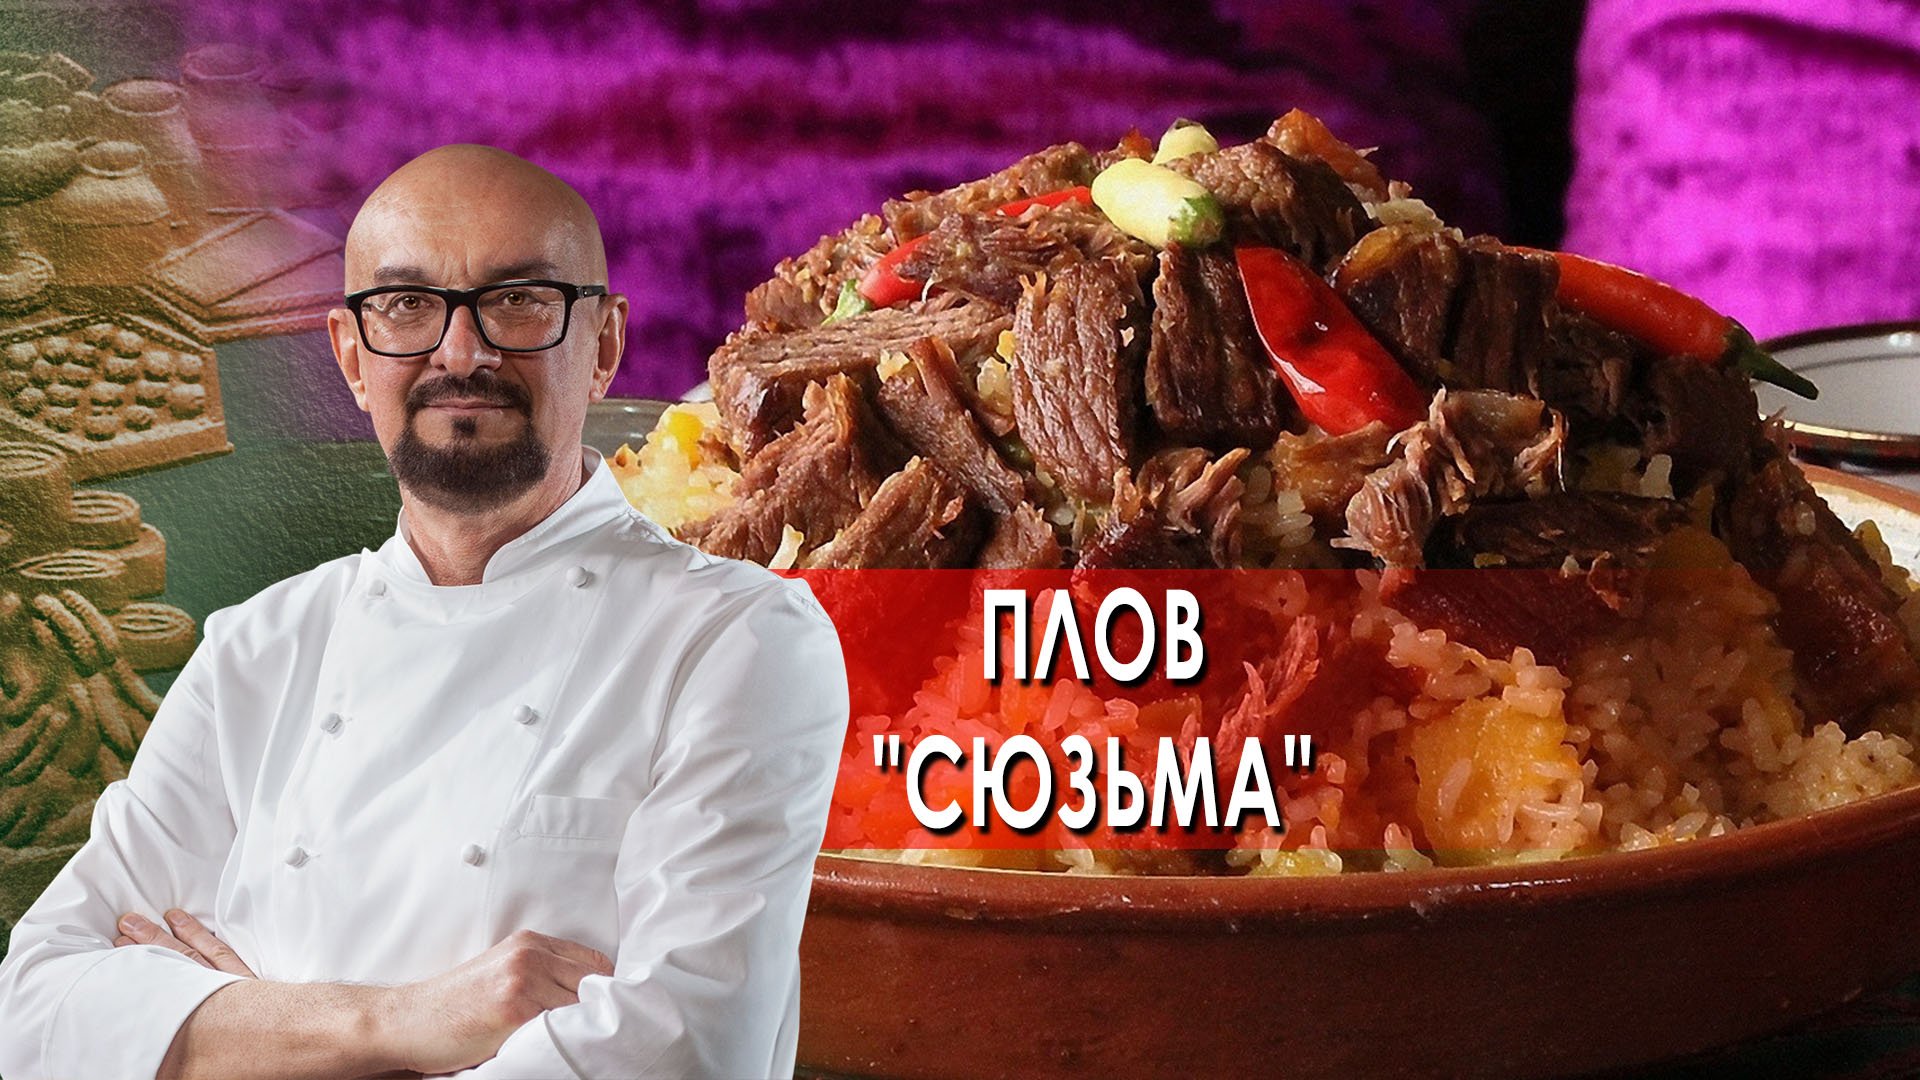 Сталик Ханкишиев: о вкусной и здоровой пище. Плов "Сюзьма" (2022)